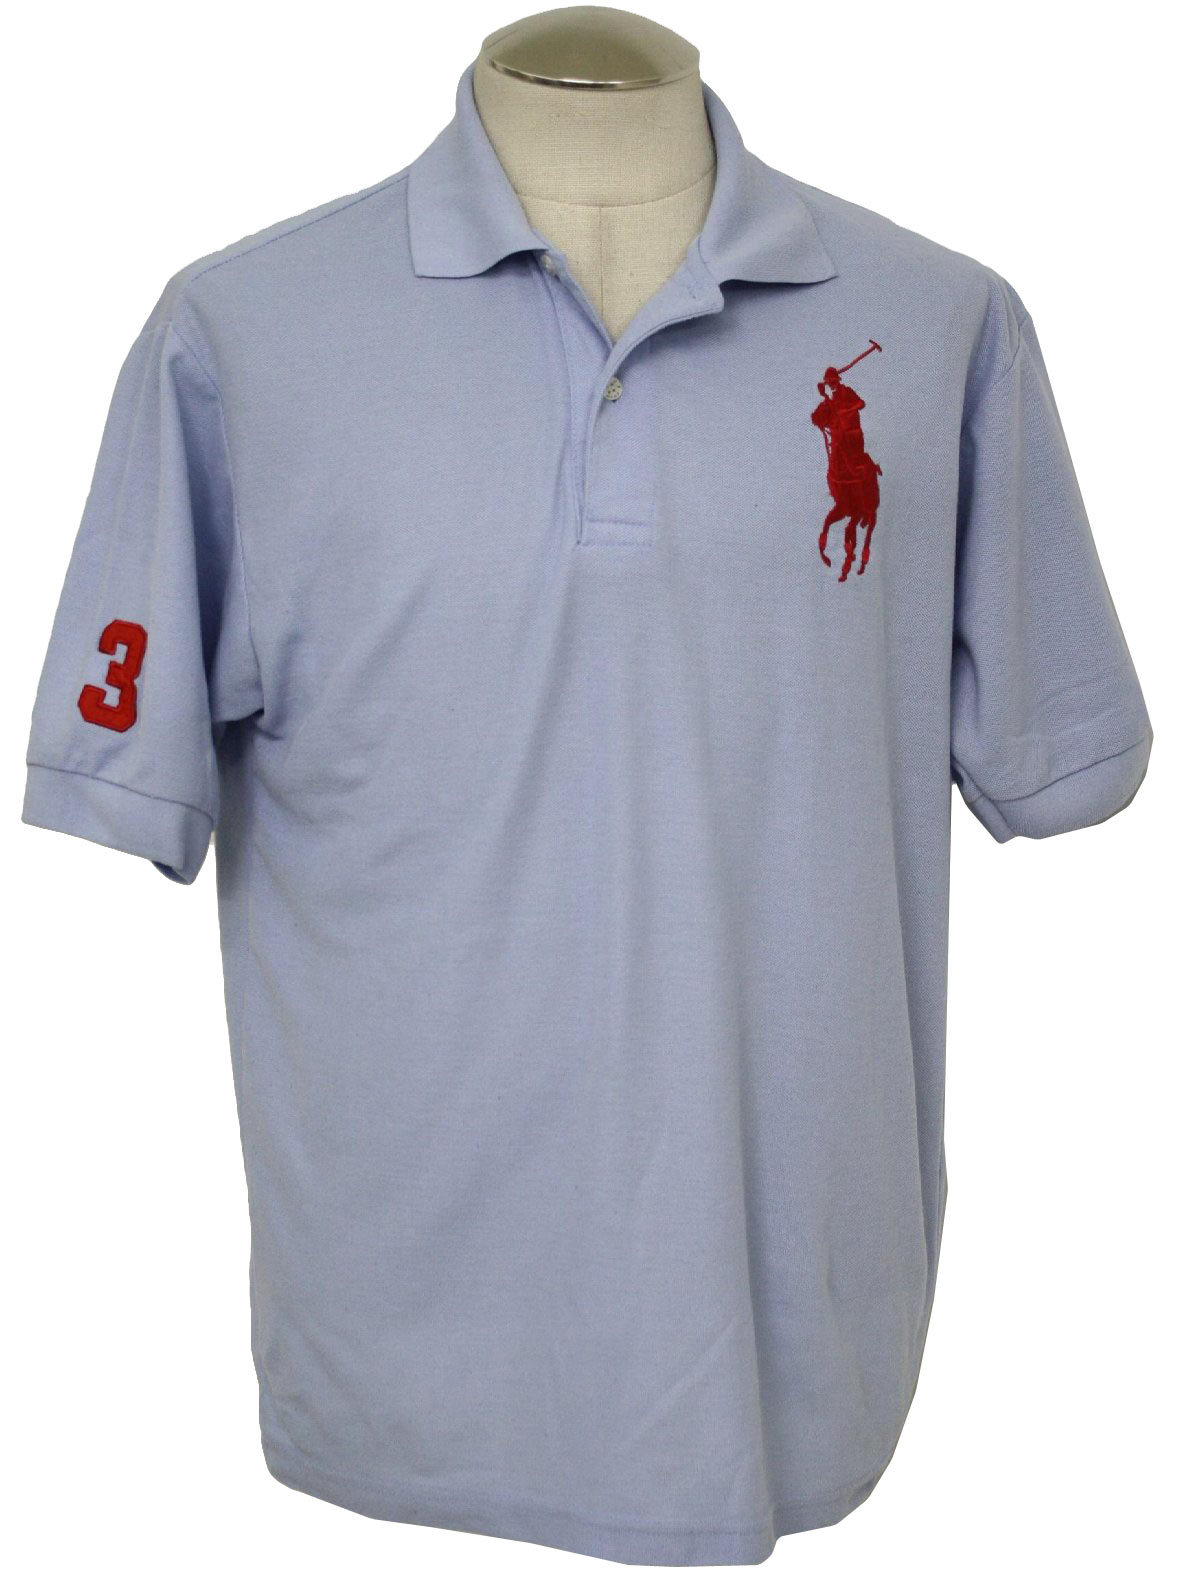 Vintage 90s Shirt: 90s -Polo by Ralph Lauren- Mens light blue cotton